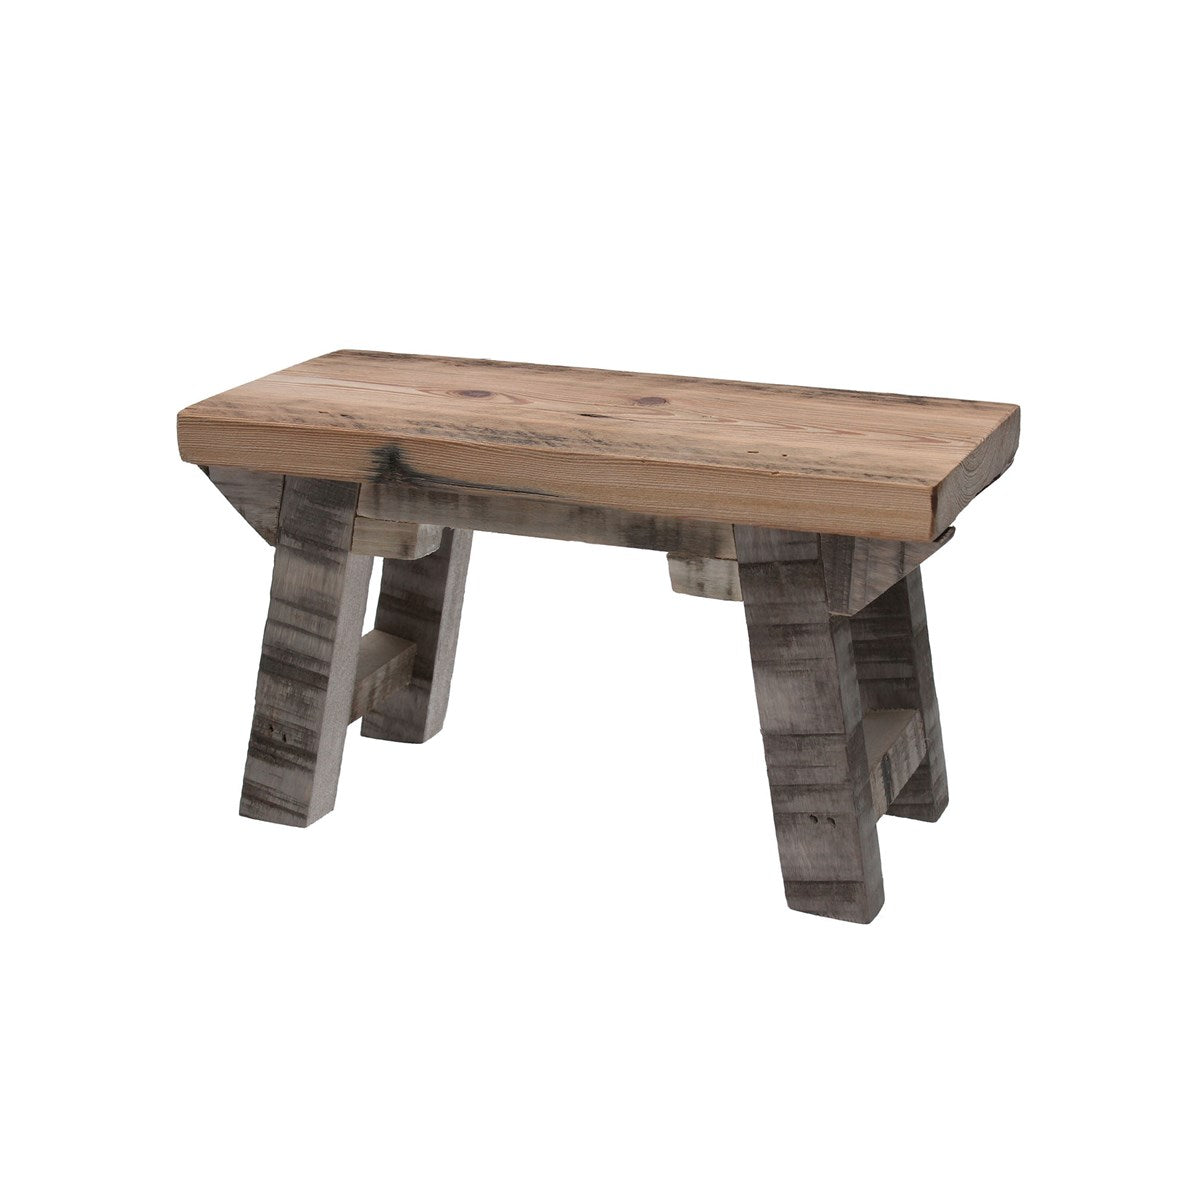 Mini Pine Wood Table